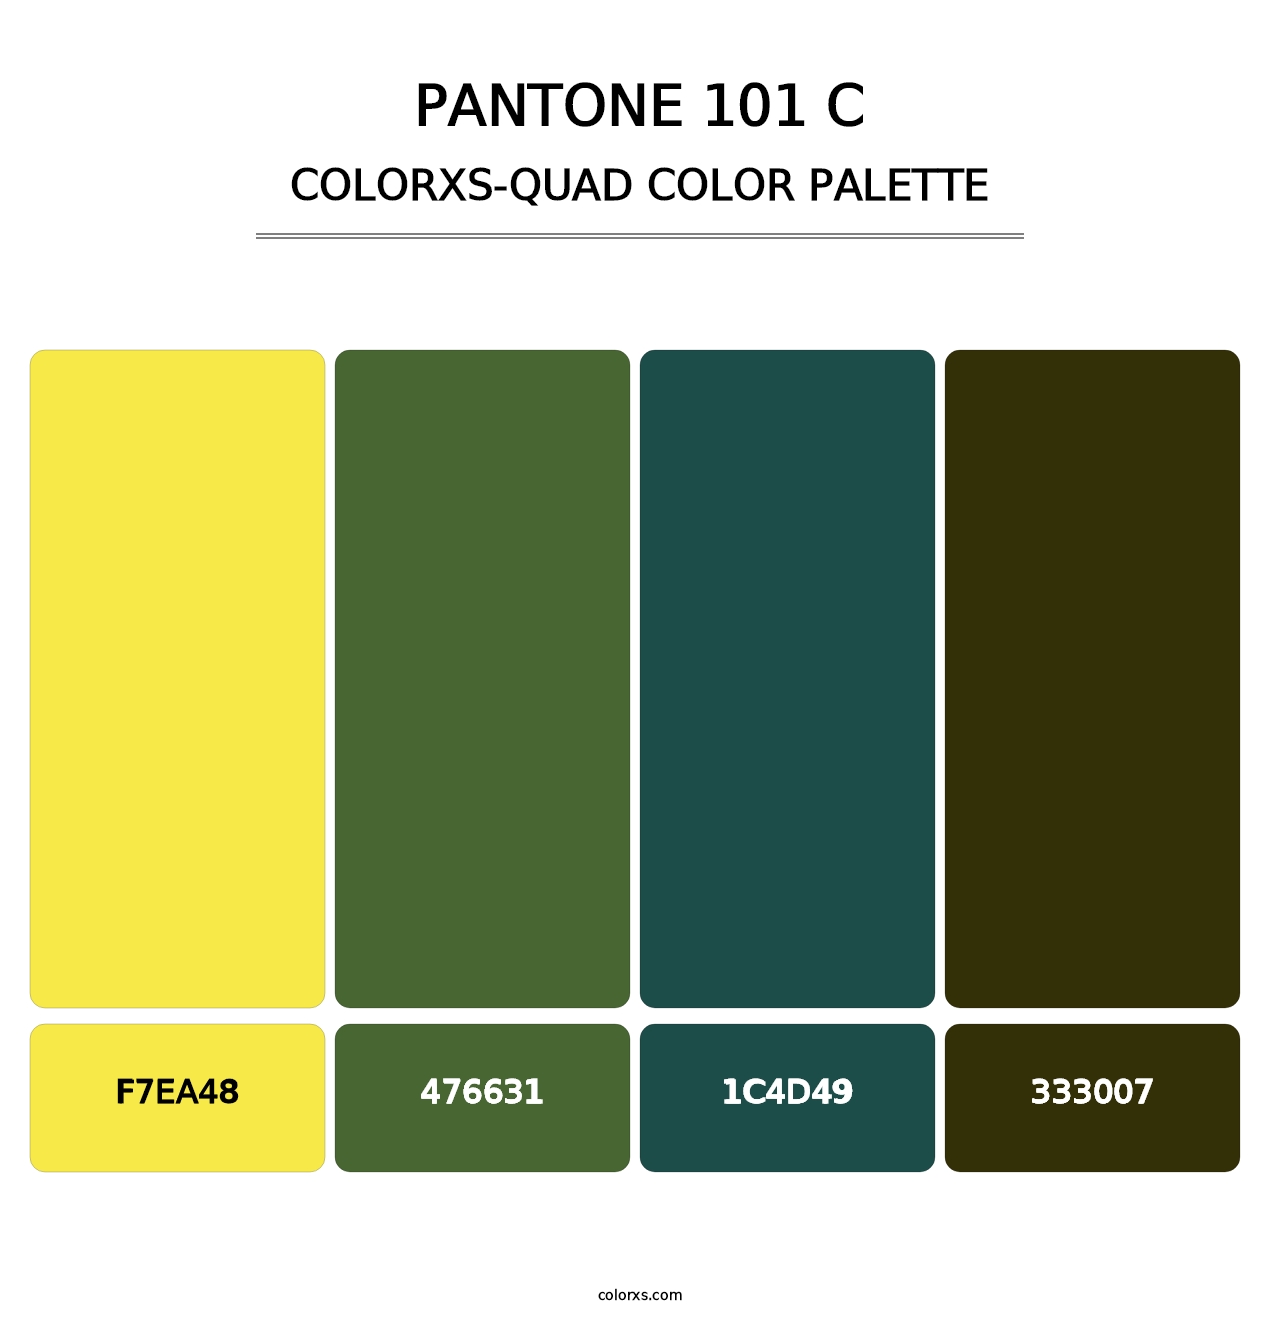 PANTONE 101 C - Colorxs Quad Palette